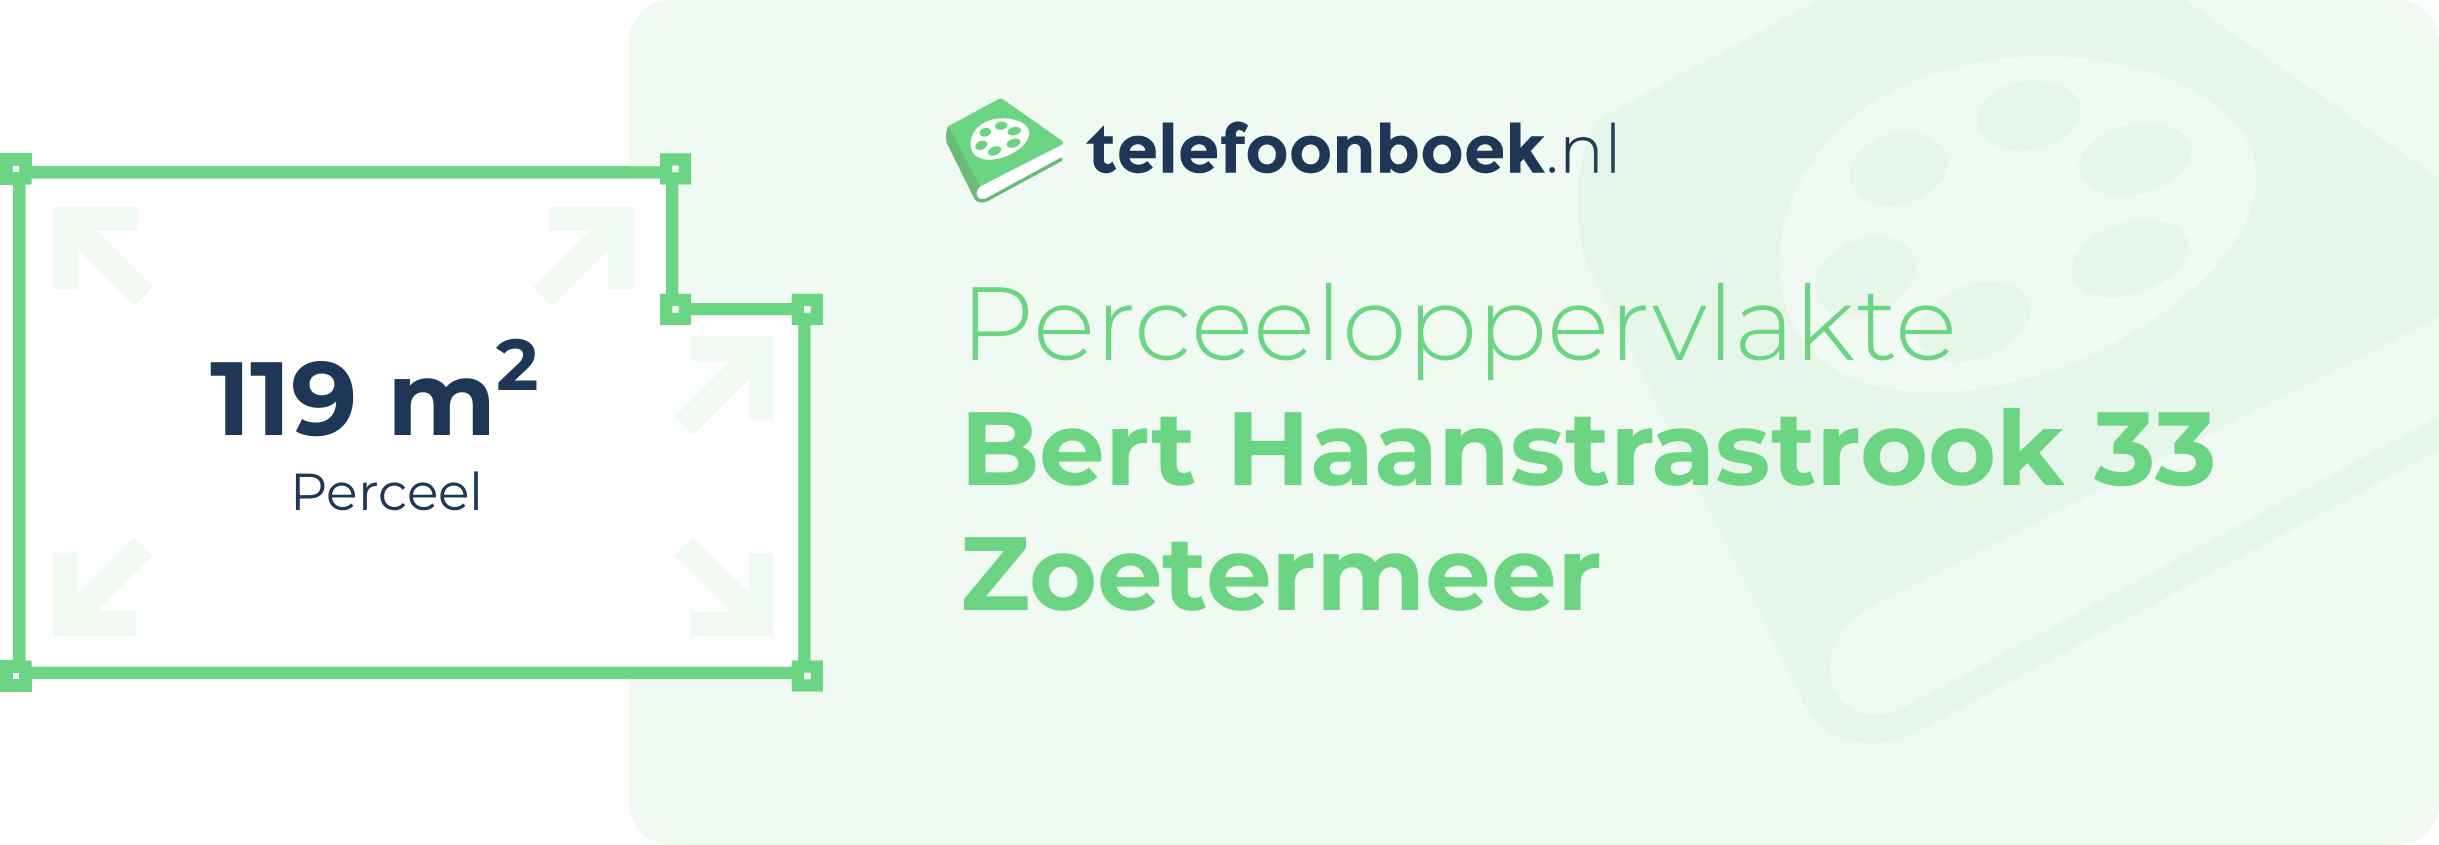 Perceeloppervlakte Bert Haanstrastrook 33 Zoetermeer